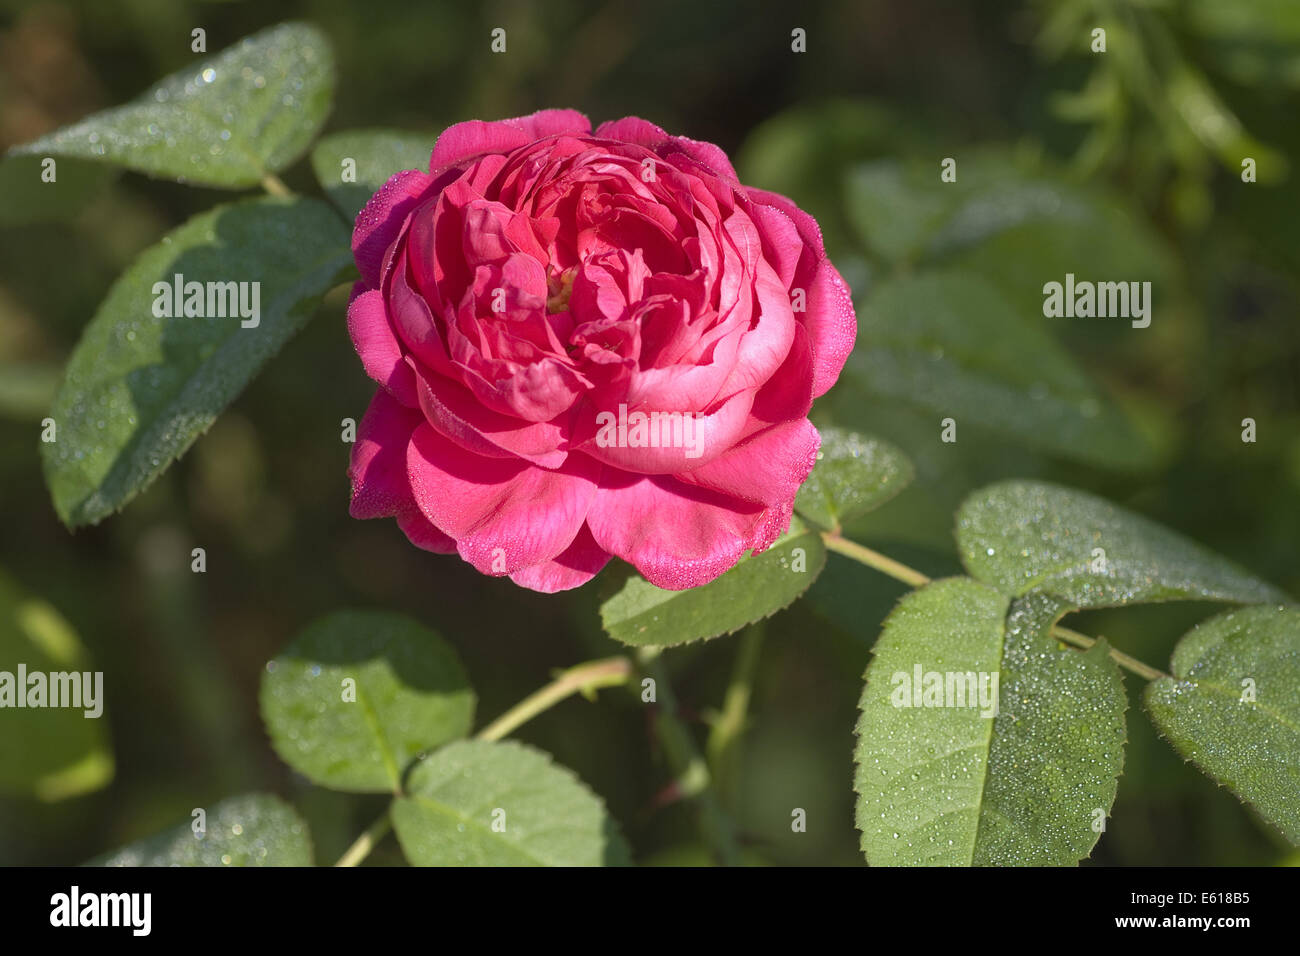 damask rose, rosa damascena Stock Photo